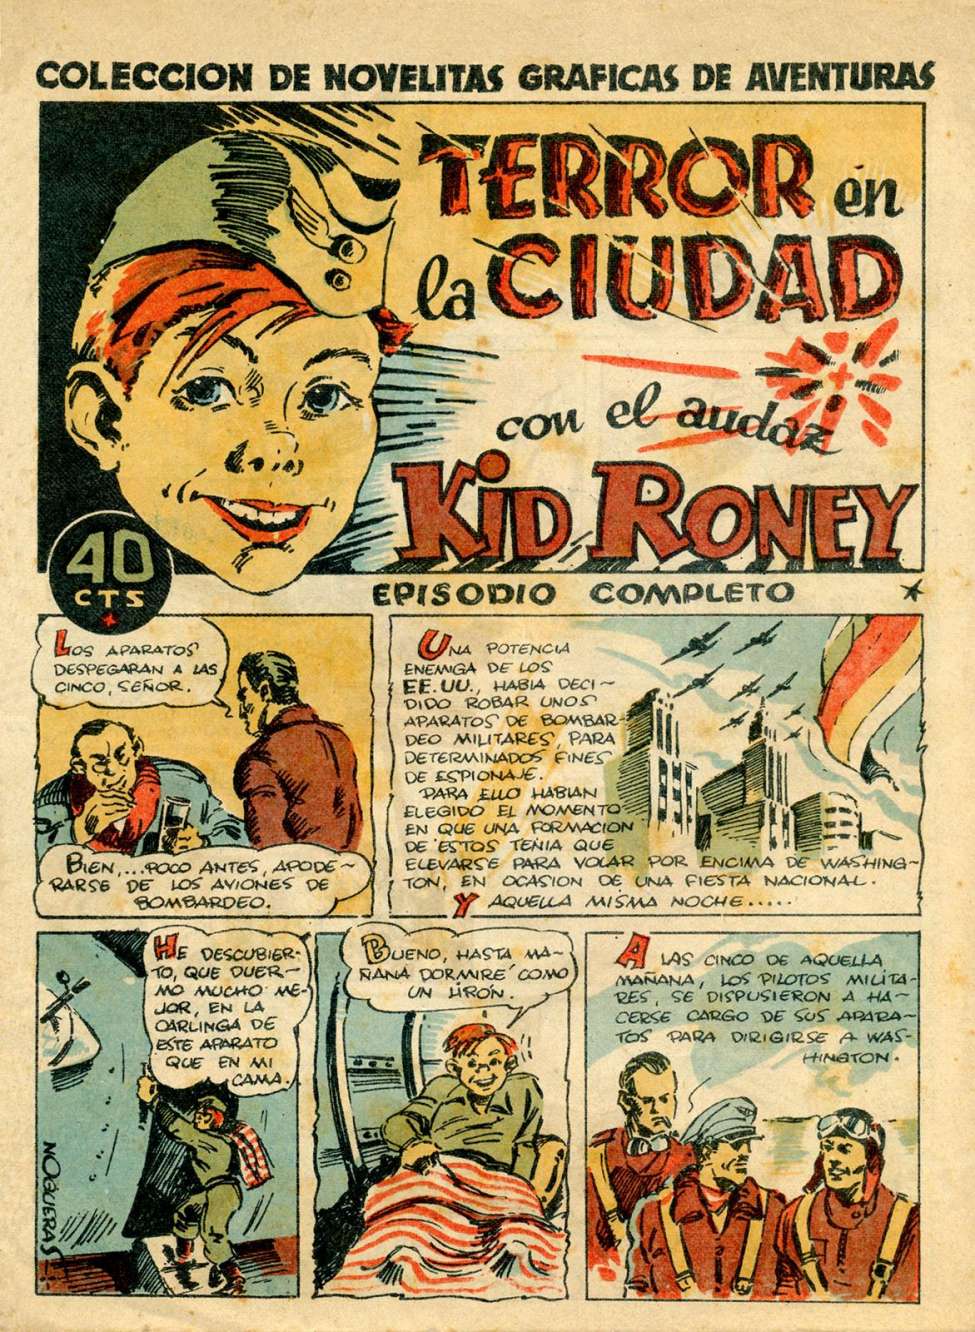 Comic Book Cover For Kid Roney 5 Terror en la ciudad